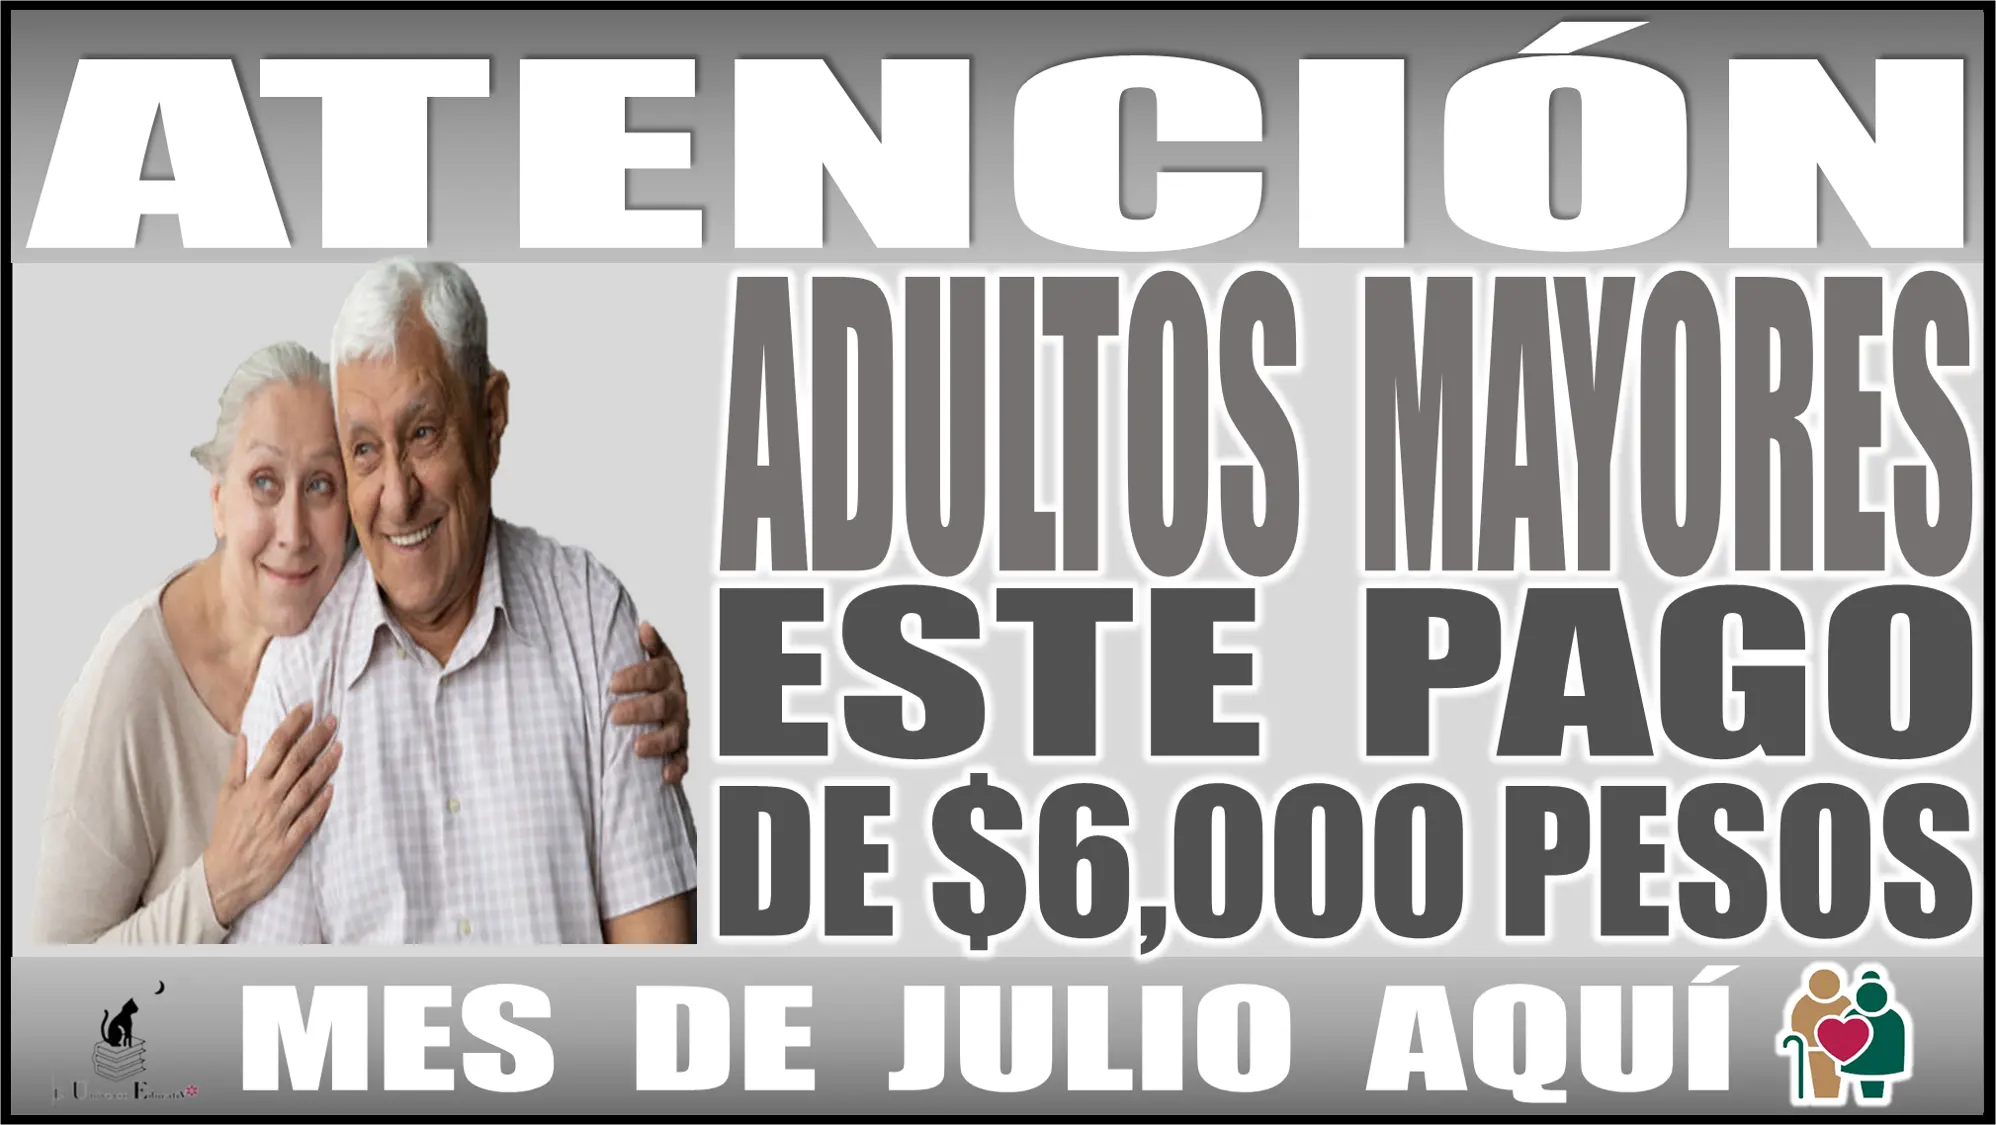 ¡Atención, mucha atención, adultos mayores!, este pago de $6,000 pesos del mes de julio ya está aquí